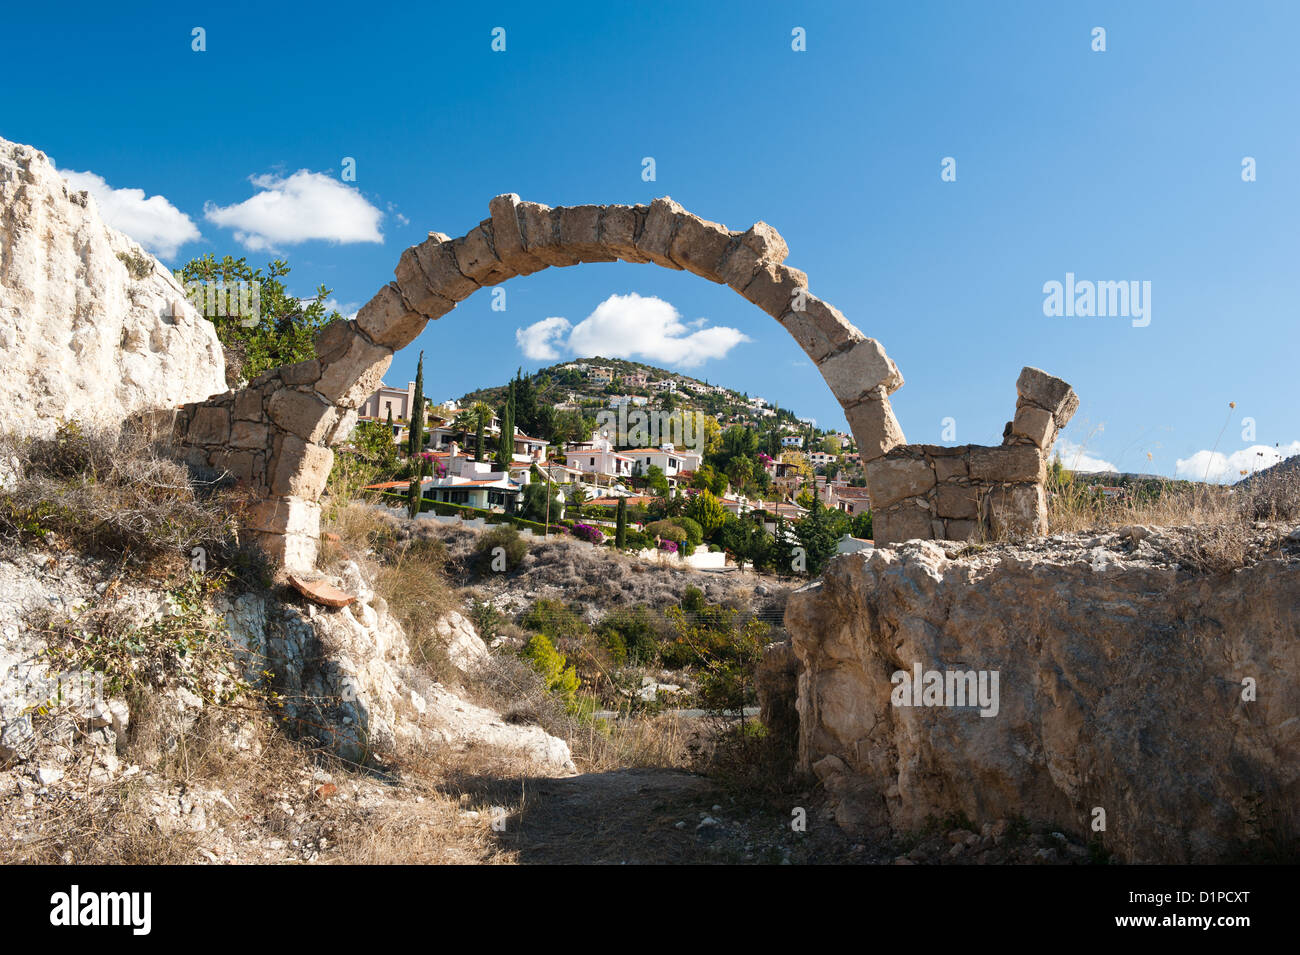 Ruins in Kili, Cyprus Stock Photo